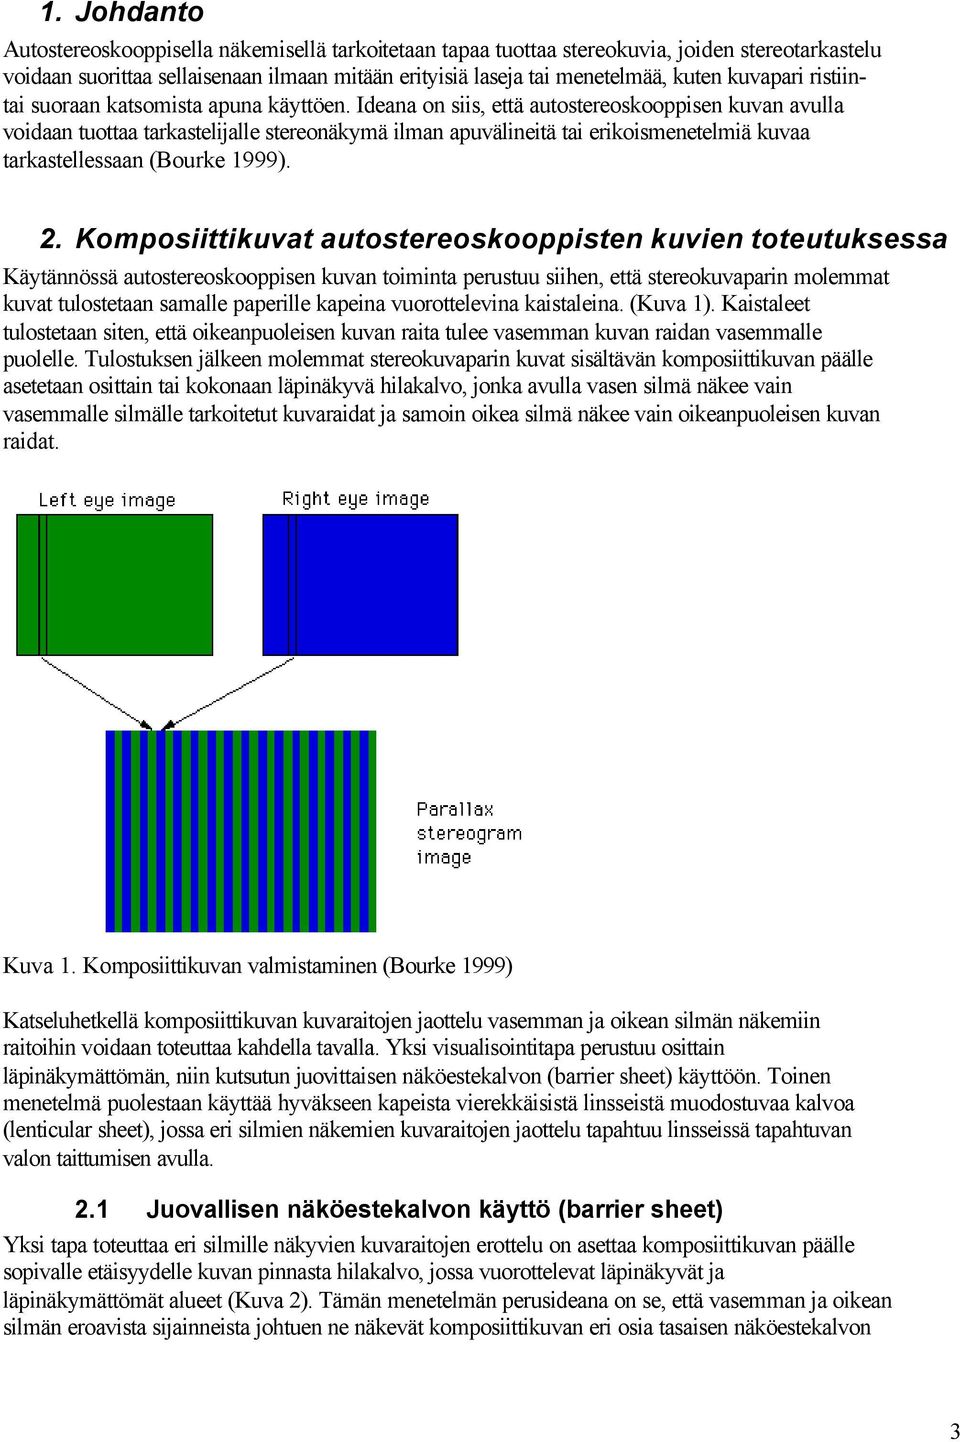 Ideana on siis, että autostereoskooppisen kuvan avulla voidaan tuottaa tarkastelijalle stereonäkymä ilman apuvälineitä tai erikoismenetelmiä kuvaa tarkastellessaan (Bourke 1999). 2.